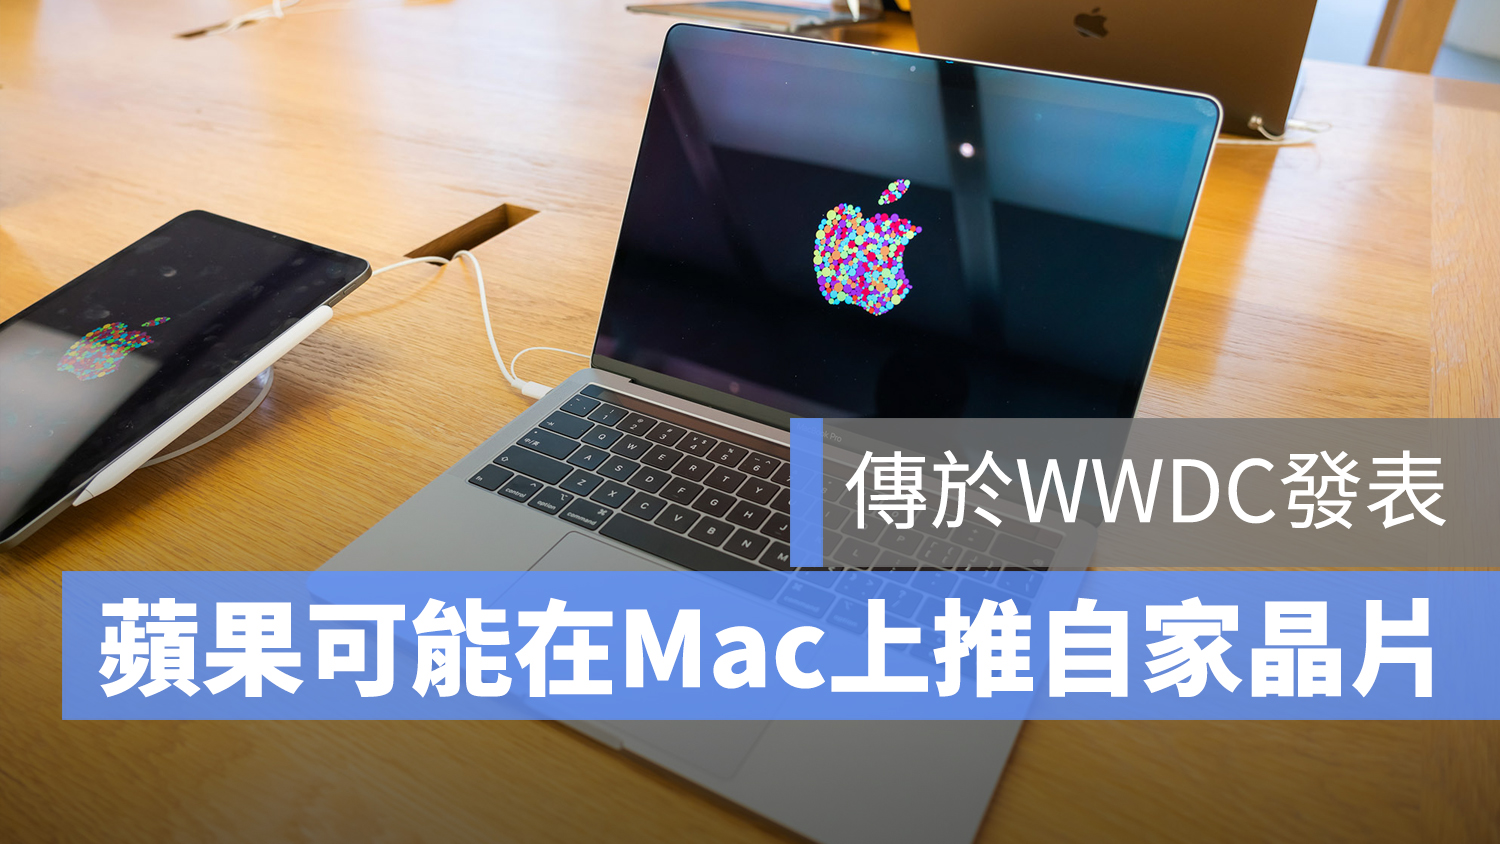 mac 自家晶片